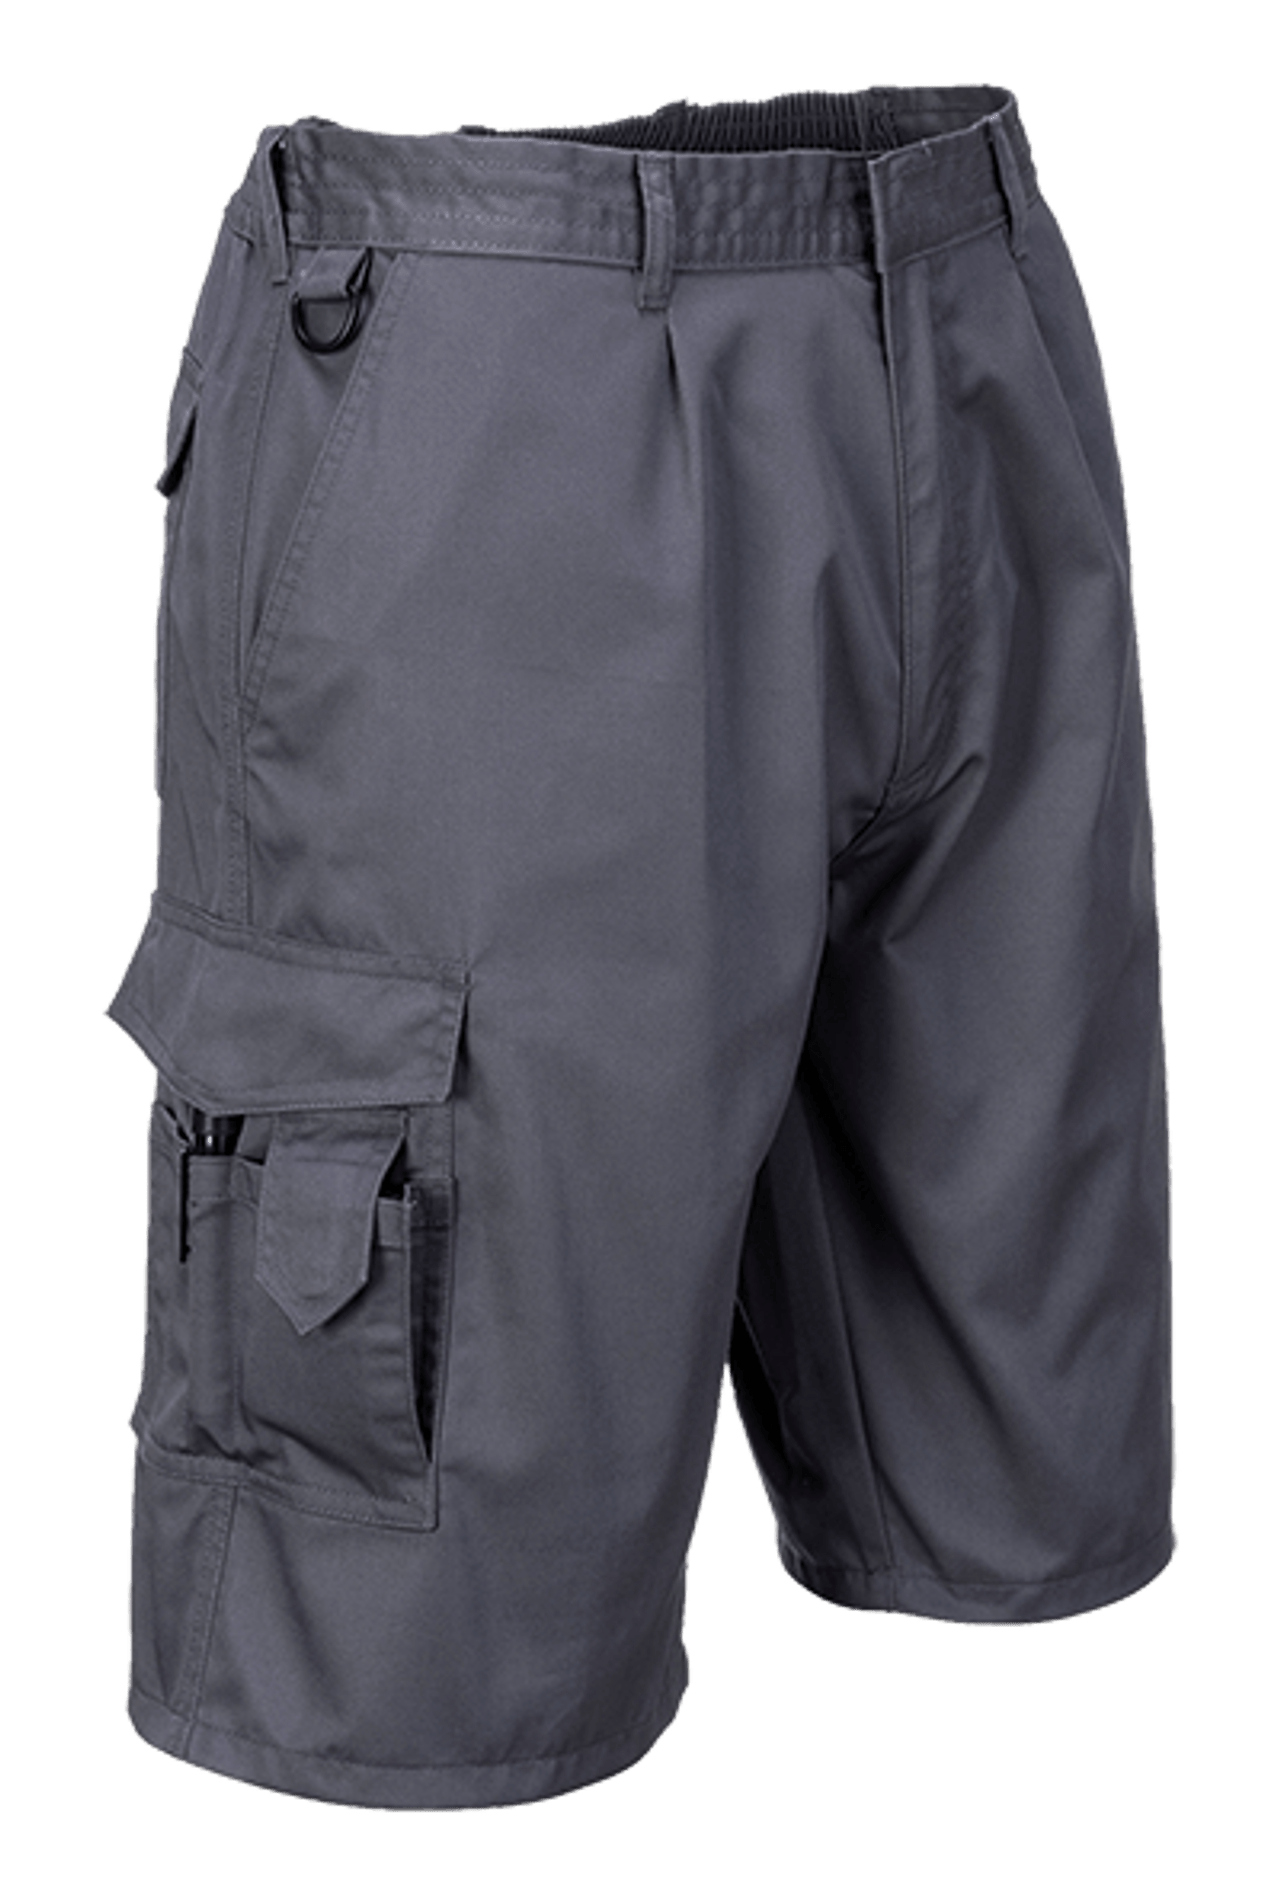 Portwest S790 Combat Shorts